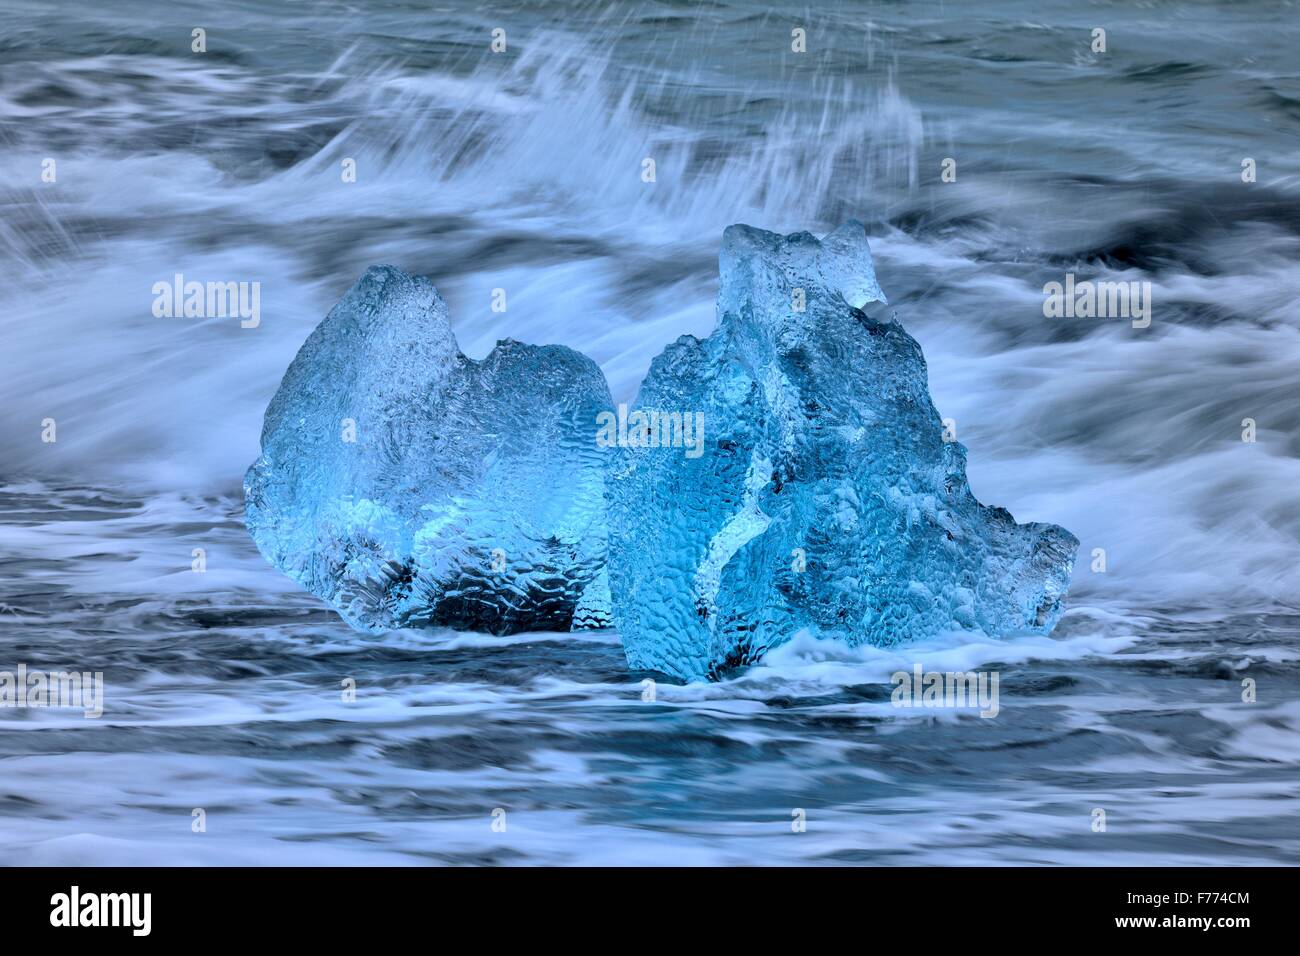 Les icebergs échoués dans les vagues bleues de l'Atlantique, Breidarsandur, Sud de l'Islande, Islande Banque D'Images